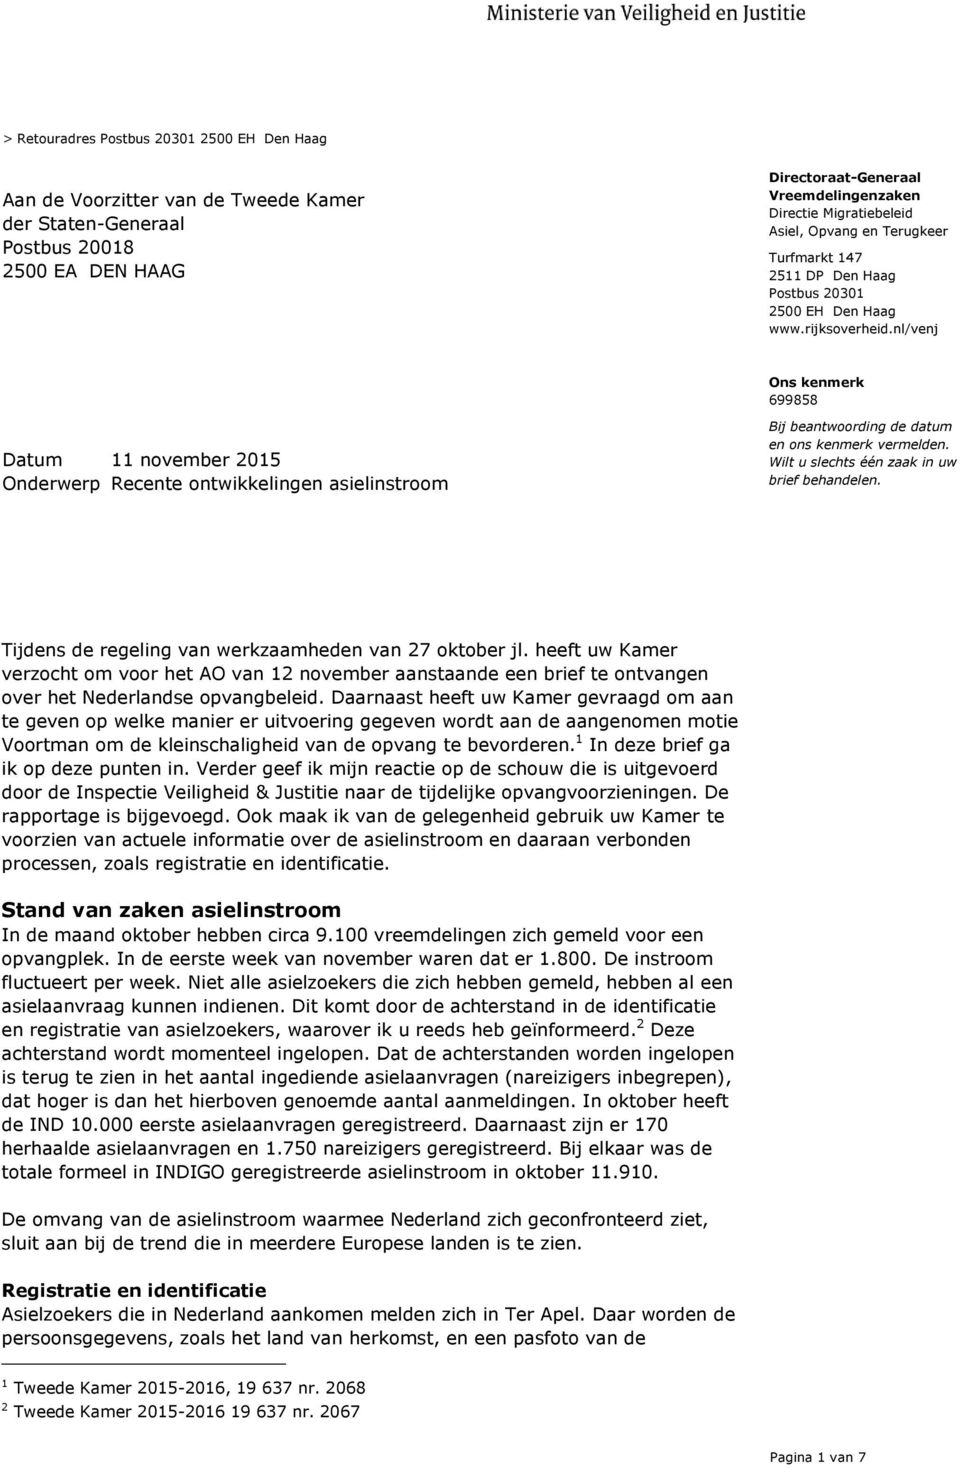 Tijdens de regeling van werkzaamheden van 27 oktober jl. heeft uw Kamer verzocht om voor het AO van 12 november aanstaande een brief te ontvangen over het Nederlandse opvangbeleid.